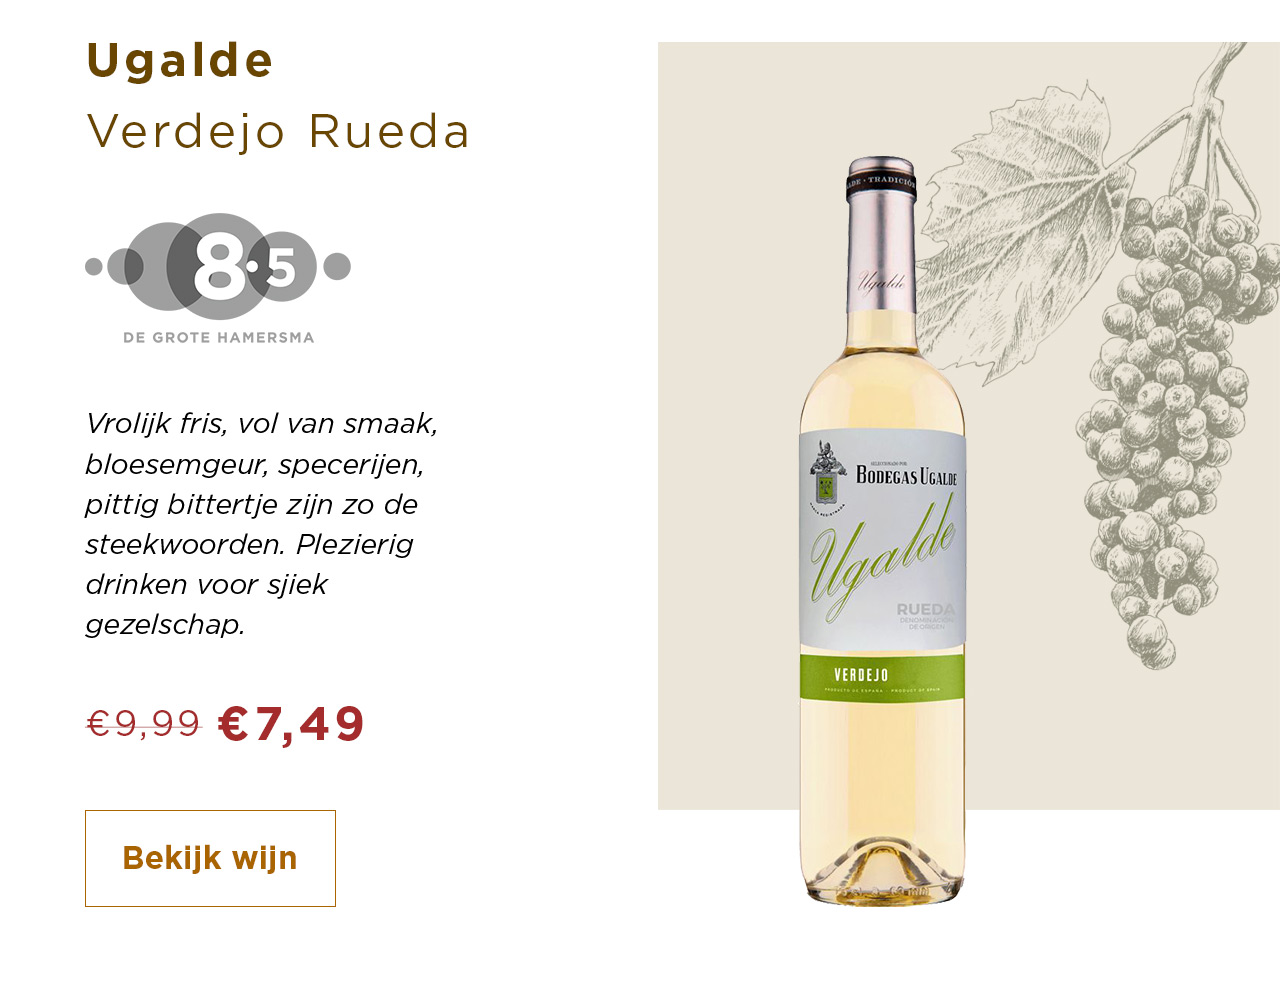 Ugalde Verdejo Rueda van 9.99 voor 7.49 | Bekijk wijn